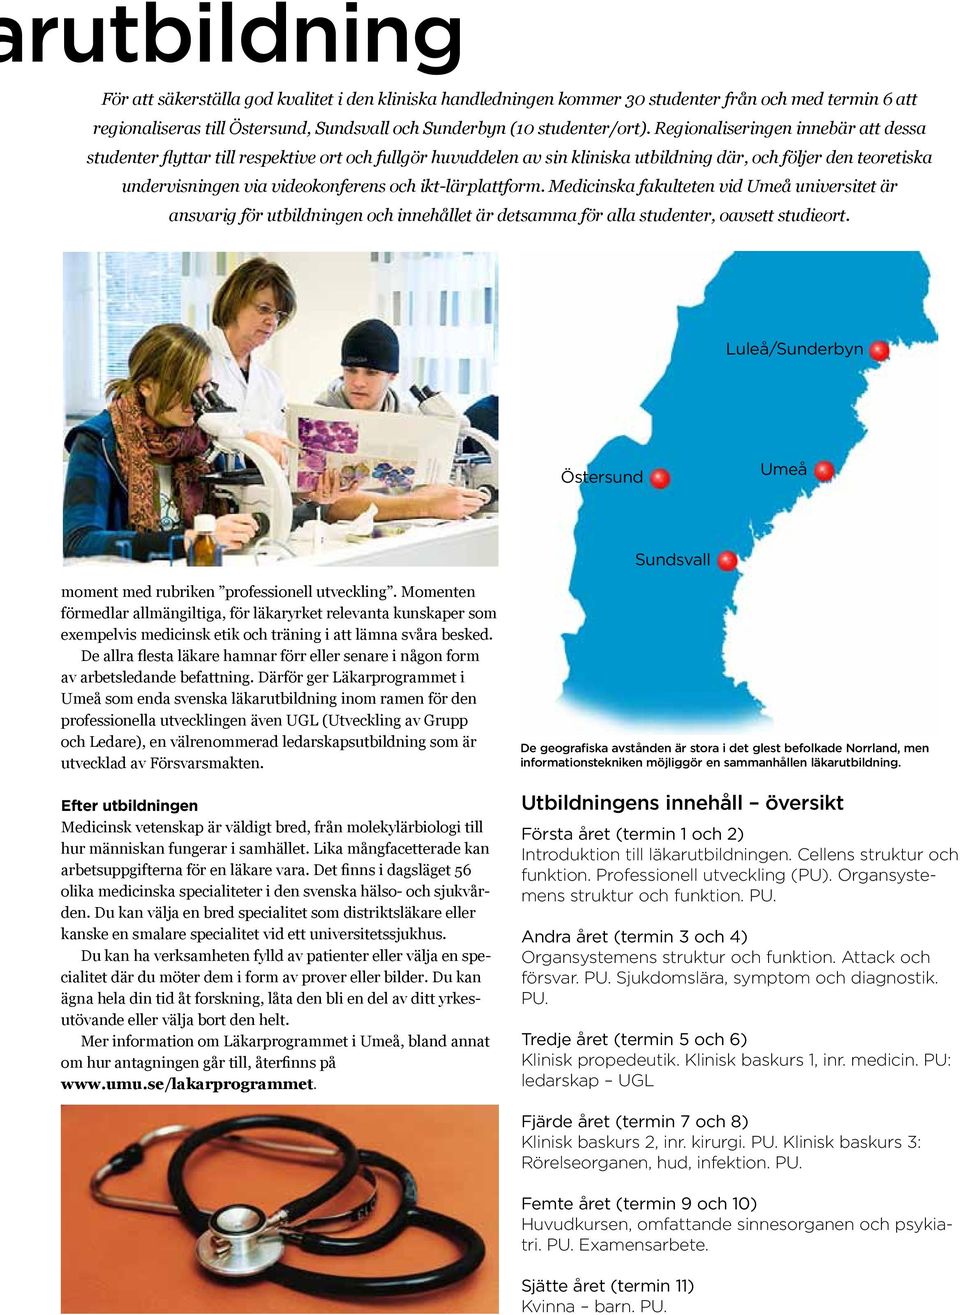 ikt-lärplattform. Medicinska fakulteten vid Umeå universitet är ansvarig för utbildningen och innehållet är detsamma för alla studenter, oavsett studieort.